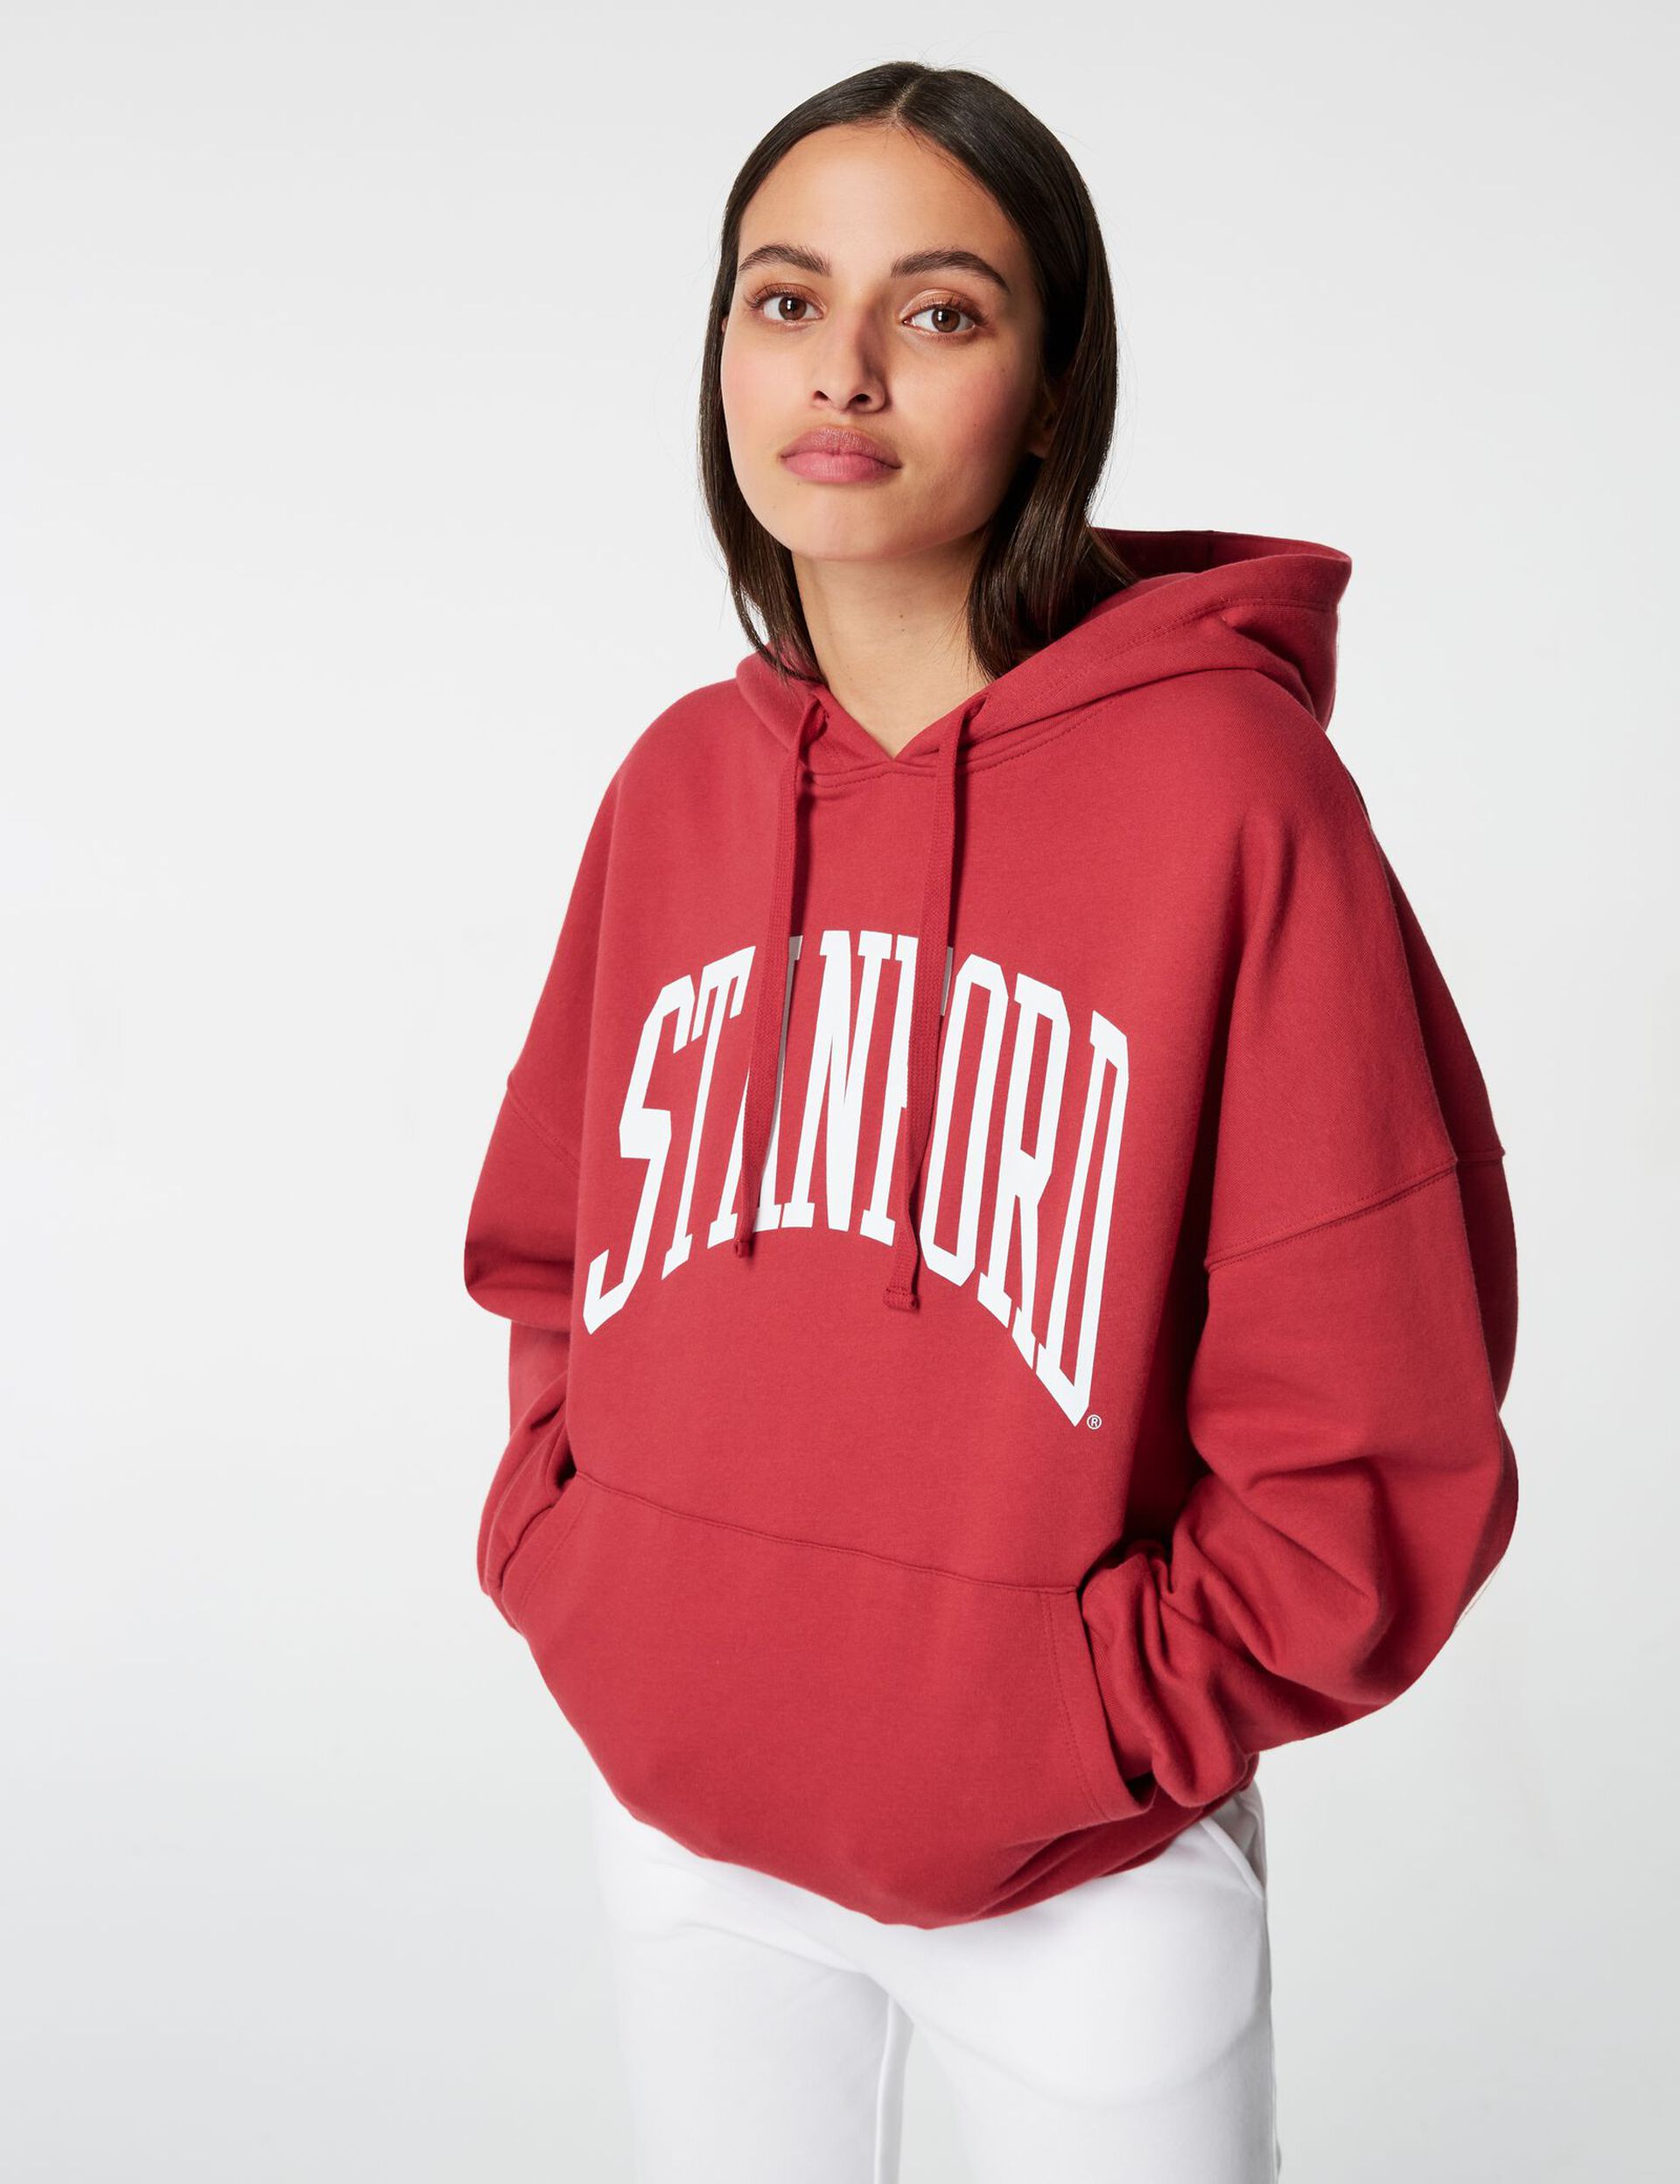 Stanford hoodie